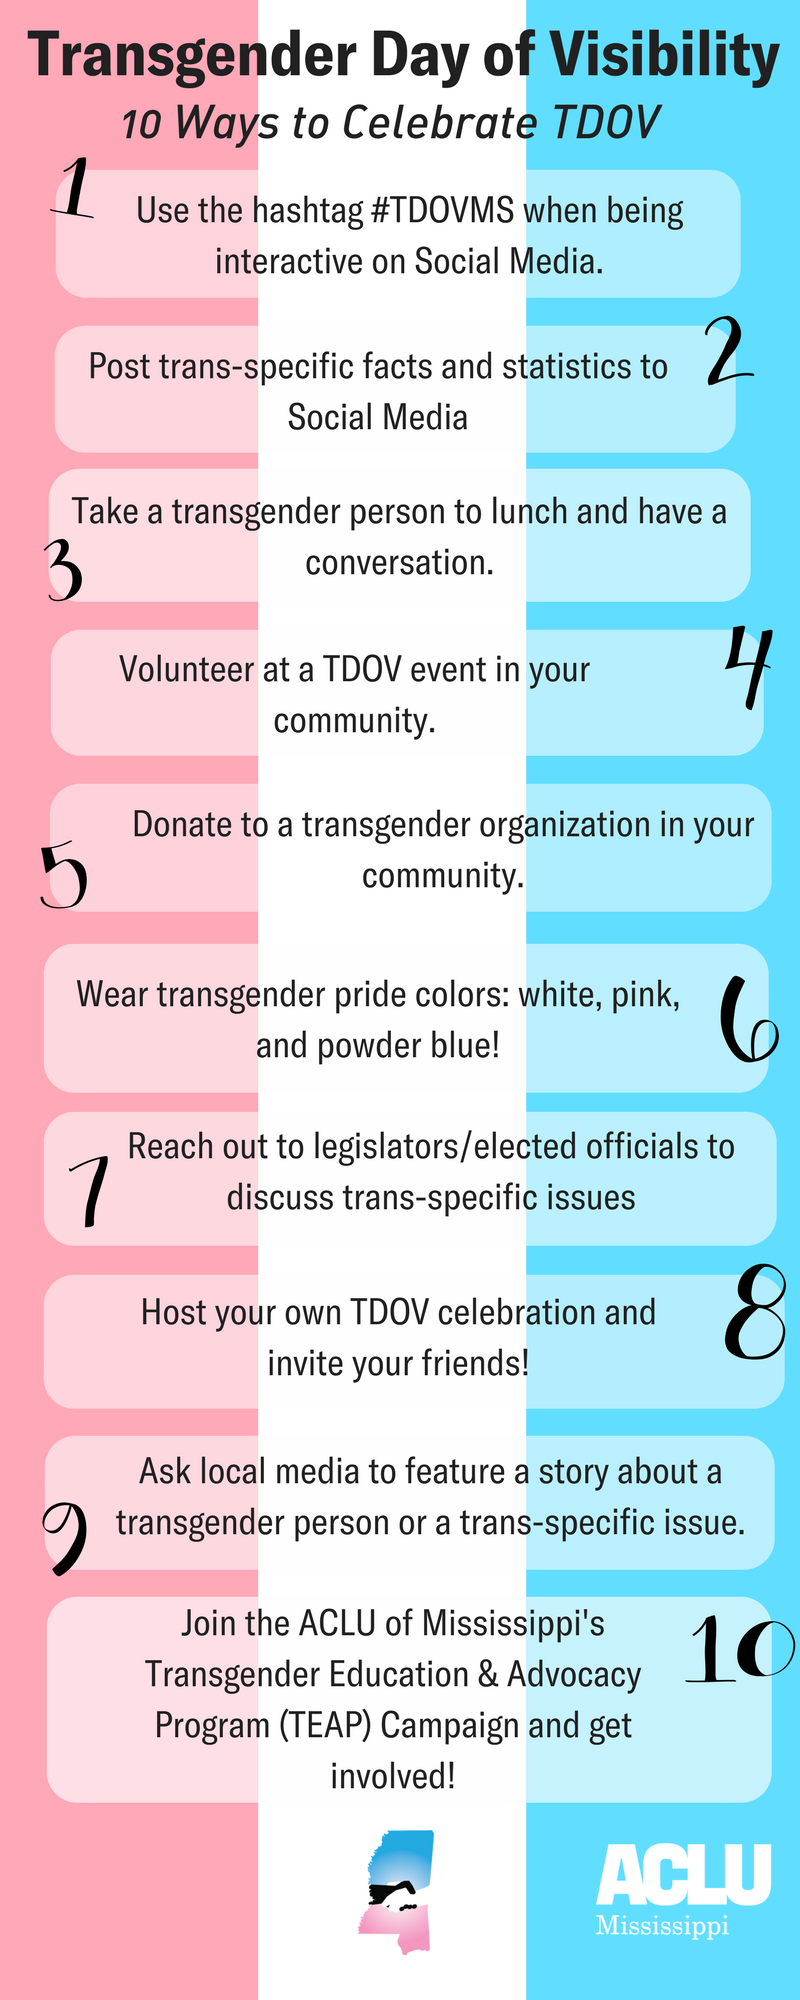 Ten Ways to Celebrate TDOV